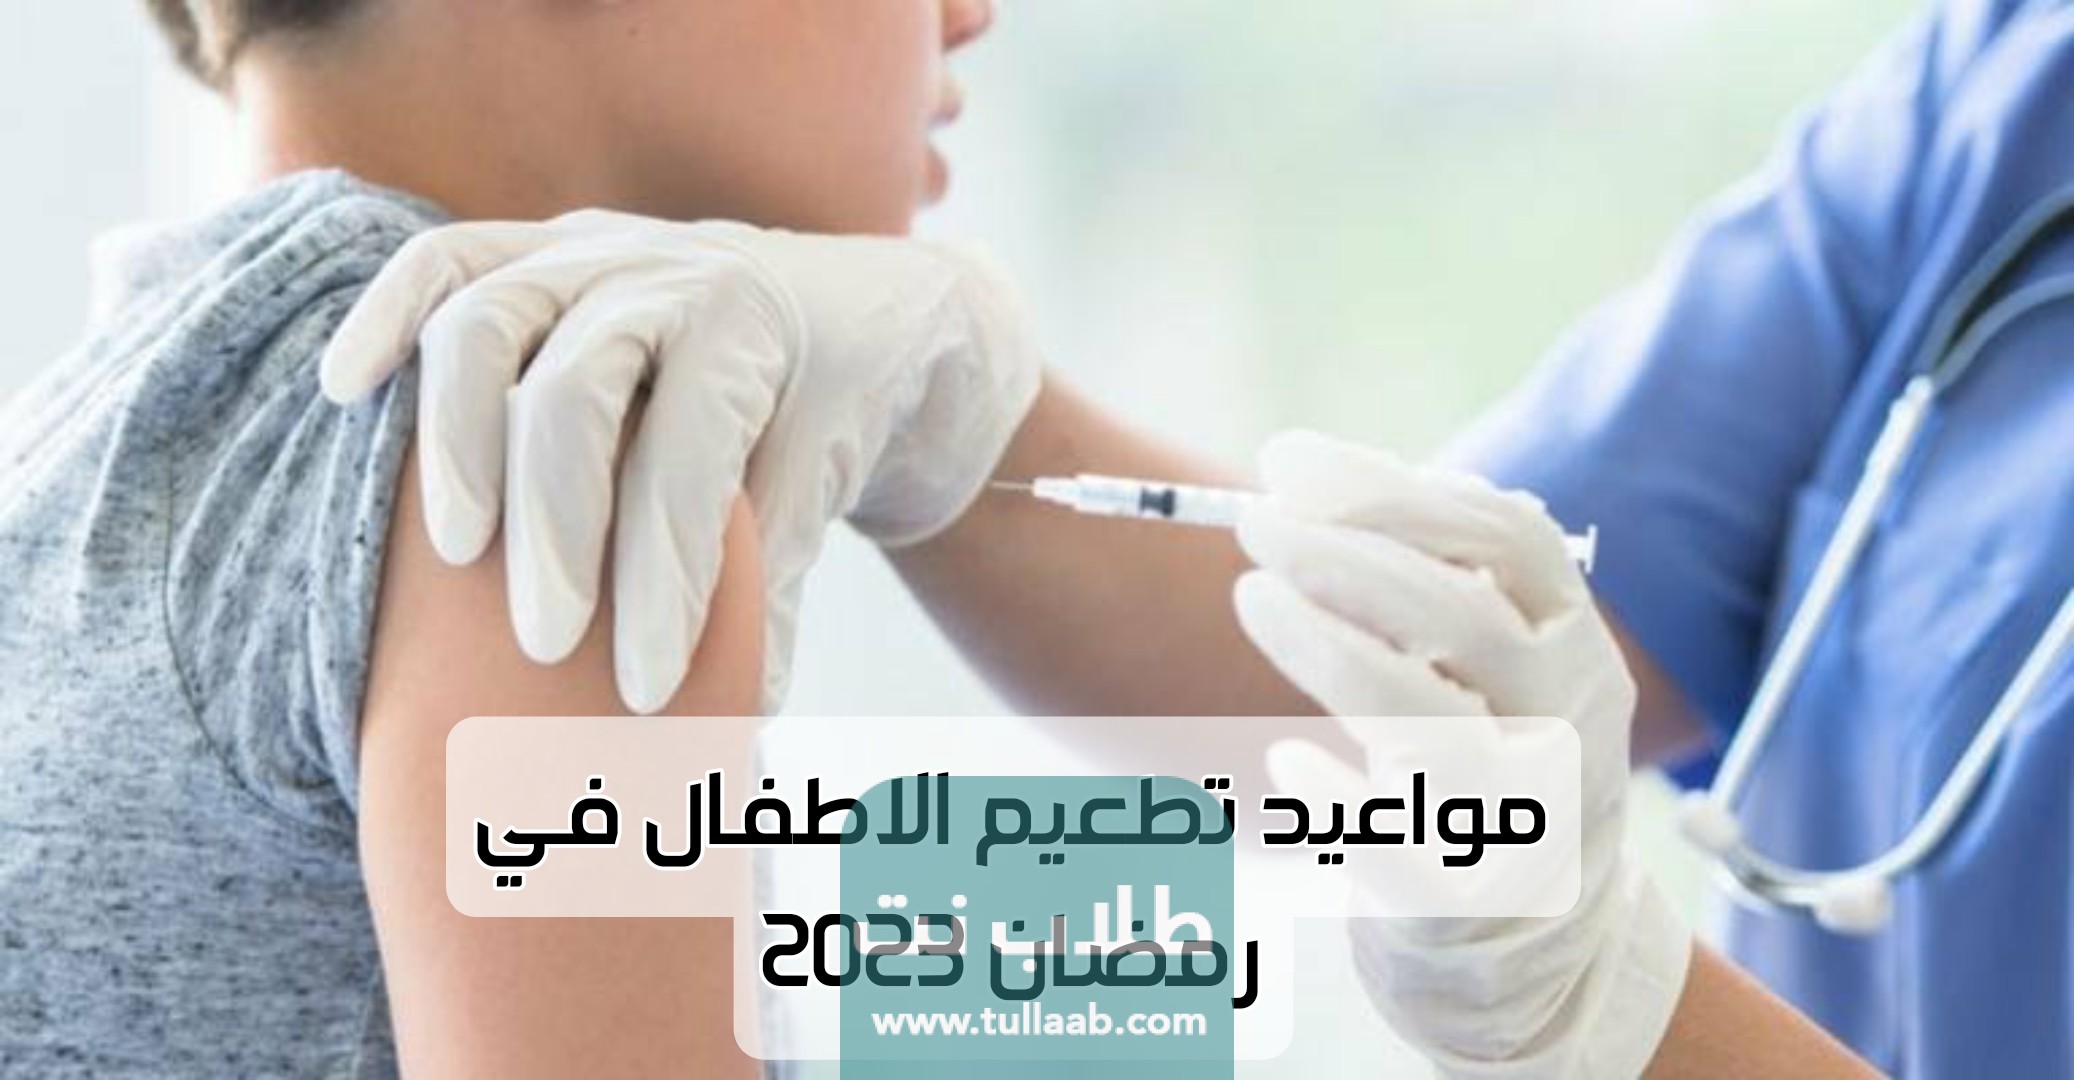 
مواعيد تطعيم الاطفال في رمضان 2023
